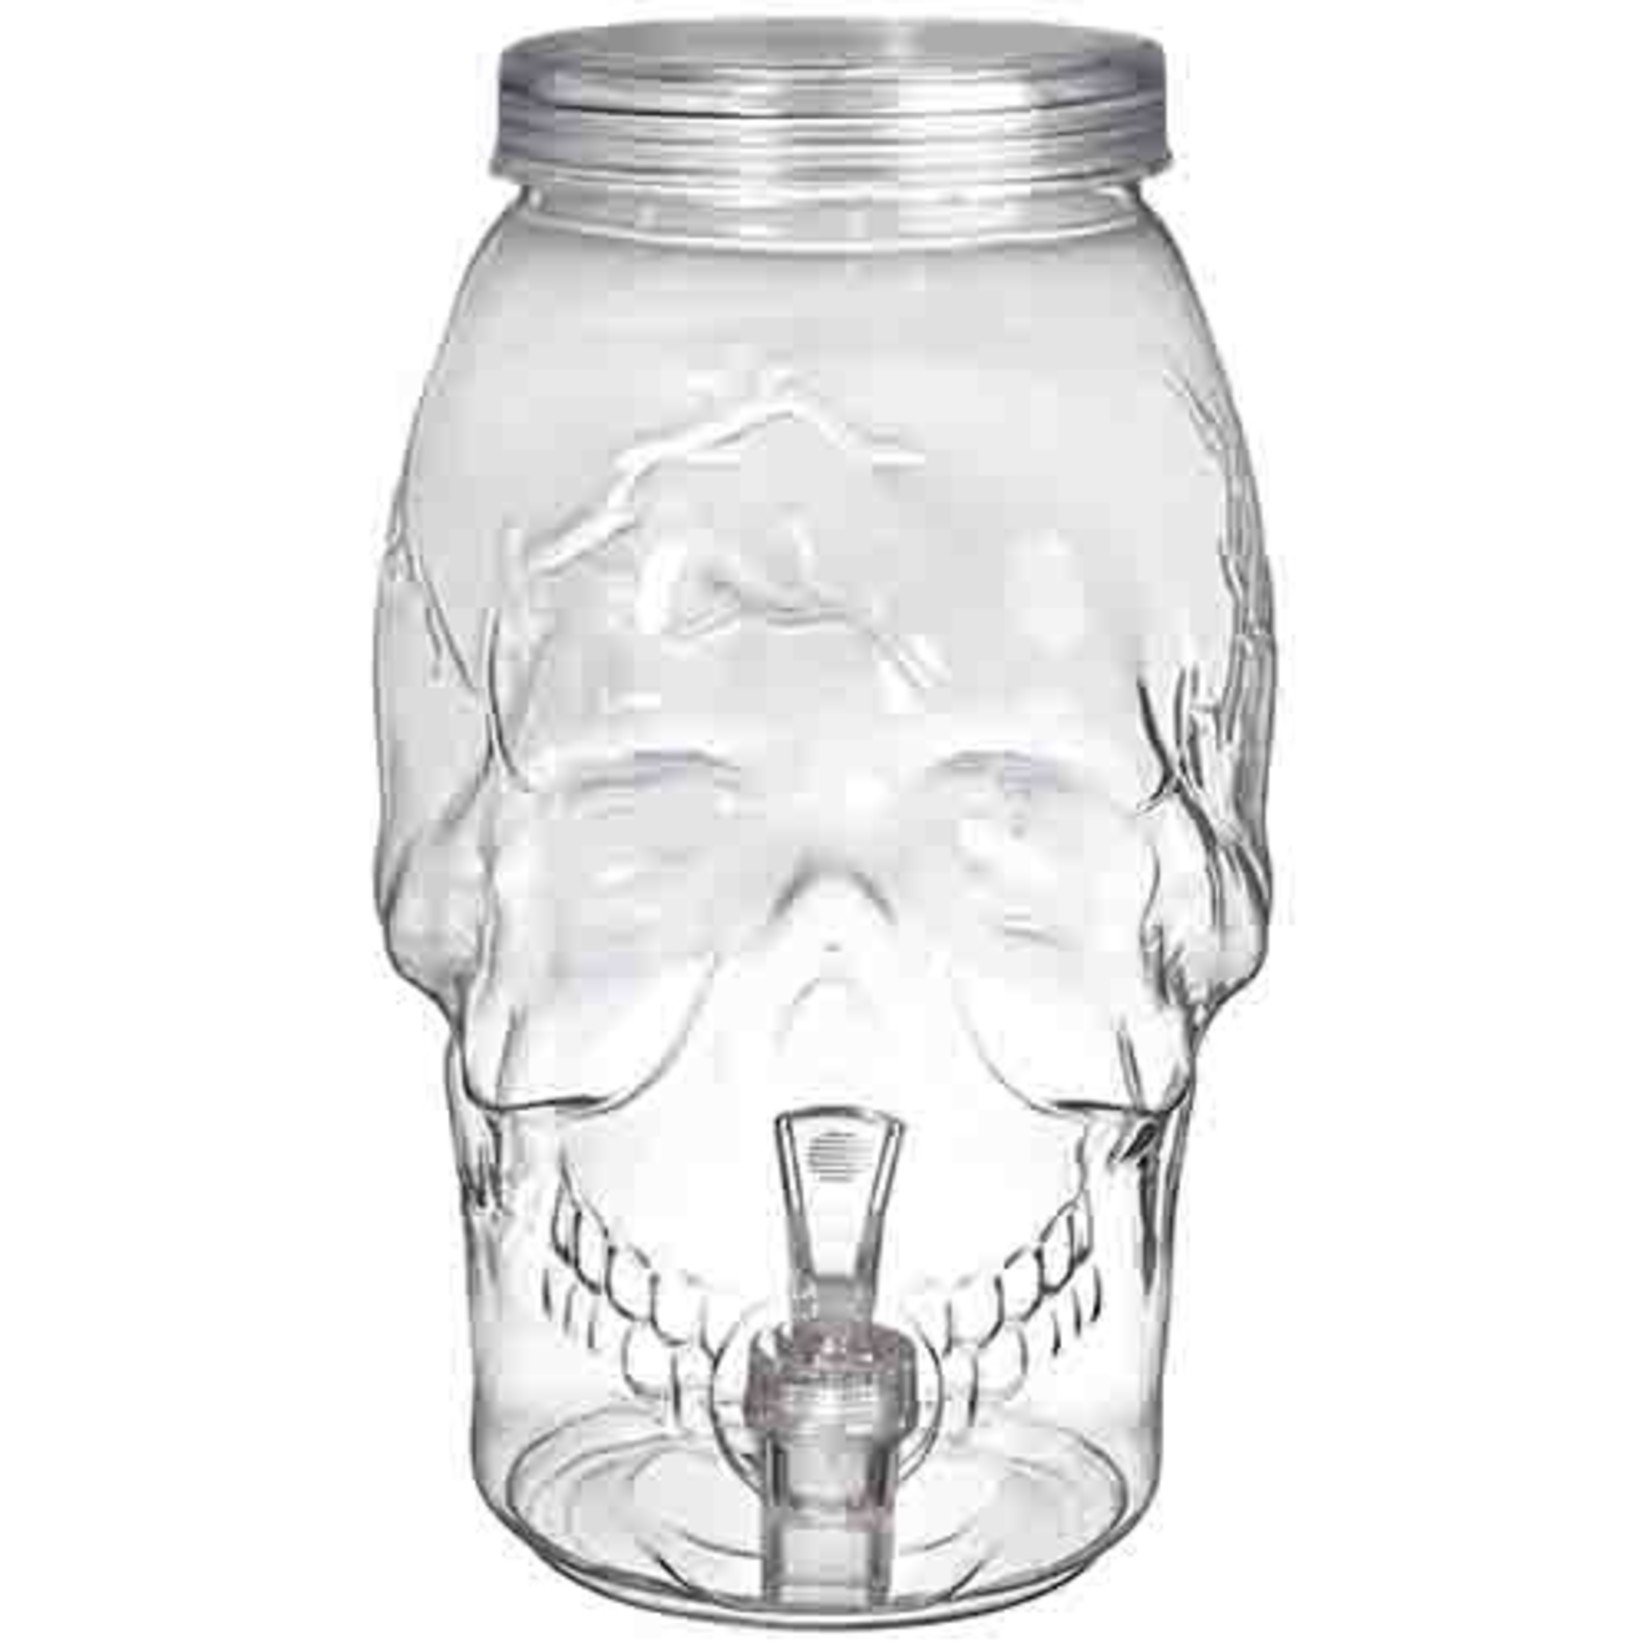 Amscan Clear Plastic Skull Shaped Drink Dispenser - Holds 1 Gallon